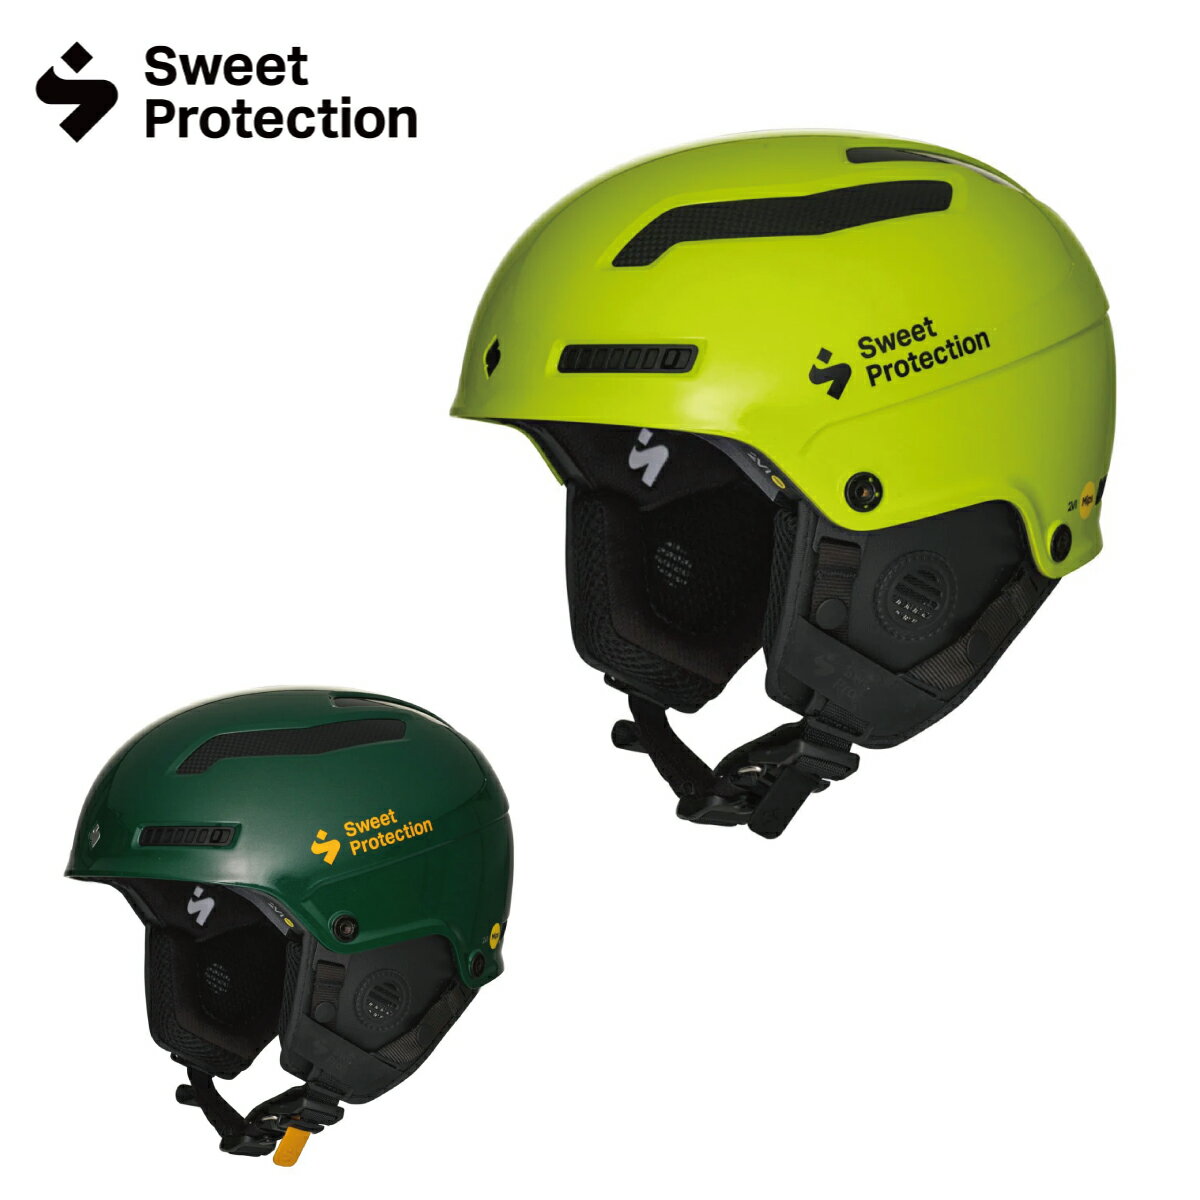 メーカー希望小売価格はメーカーカタログに基づいて掲載しています Sweet Protection スウィートプロテクション スキー ヘルメット■Trooper 2Vi SL Mips / トルーパー 2Vi エスエル ミップス■トゥルーパー 2Vi スラローム MIPSワールドカップクラスの安全性を持つスラローム競技向けの最高のカーボンレースヘルメットが、2Vi 新テクノロジーを搭載してアップデート。2021 年に新開発の 2Vi テクノロジーを搭載しアップデート。前モデルに比べて 7％ の軽量化と 16％ の衝撃性能の向上を実現しました。プラスチックの弾性とカーボンファイバーの剛性を兼ね備えた最新ヘルメットは、ワールドカップレーサーからも絶大な信頼と支持を得ています。革命的な 2Vi テクノロジー・プラットフォームは、頭部や側面部などプロテクションを必要とするキーエリアのシェルの厚みとインナーモールドの密度を複雑に変えることで、安全性と快適性の両立をさせています。シェル構造は、強度と性能を高めるためにプリプレグ・カーボンファイバーで補強されたワンピースモノシェル構造に変更されました。脳損傷を回転によって軽減する MIPS システムが搭載されています。付属のチンガードは標準装備で同梱されており、驚異的な強度を誇る別売のチタン製チンガードにも付け替え可能です。日本販売代理店公式ストア限定の製品保証サービス、使用上の破損があった場合でも新たな次の商品を 40% OFF にてお買い換えすることができる「クラッシュリプレイスメント」、一年間の製品初期保証を最大三年間延長できる「プロテジャー延長保証」、各サービスの対象商品です。スウィートプロテクションは、ノルウェー東部の小さな村トゥリシルで 2000 年に設立された、世界最高峰のプロテクションギアブランドです。スキー・スノーボード・カヤック・バイクなどのアクションスポーツの、ヘルメット・アイウェア・プロテクション・テクニカルウェアを発表しています、一流アスリートの協力によって細部にいたるまで完璧に追求されたその製品は、世界を常に革新的にリードしています。■カラー：Gloss Fluo/Gloss Racing Green■サイズ：S/M,M/L,L/XL■重量 (Weight) : 700 g (M/L)■安全認証 (Ceritifications) : CE EN1077 class B / ASTM2040※メーカー企画書の情報で商品登録を行っております。予告なしに商品名と仕様変更される場合がございます。